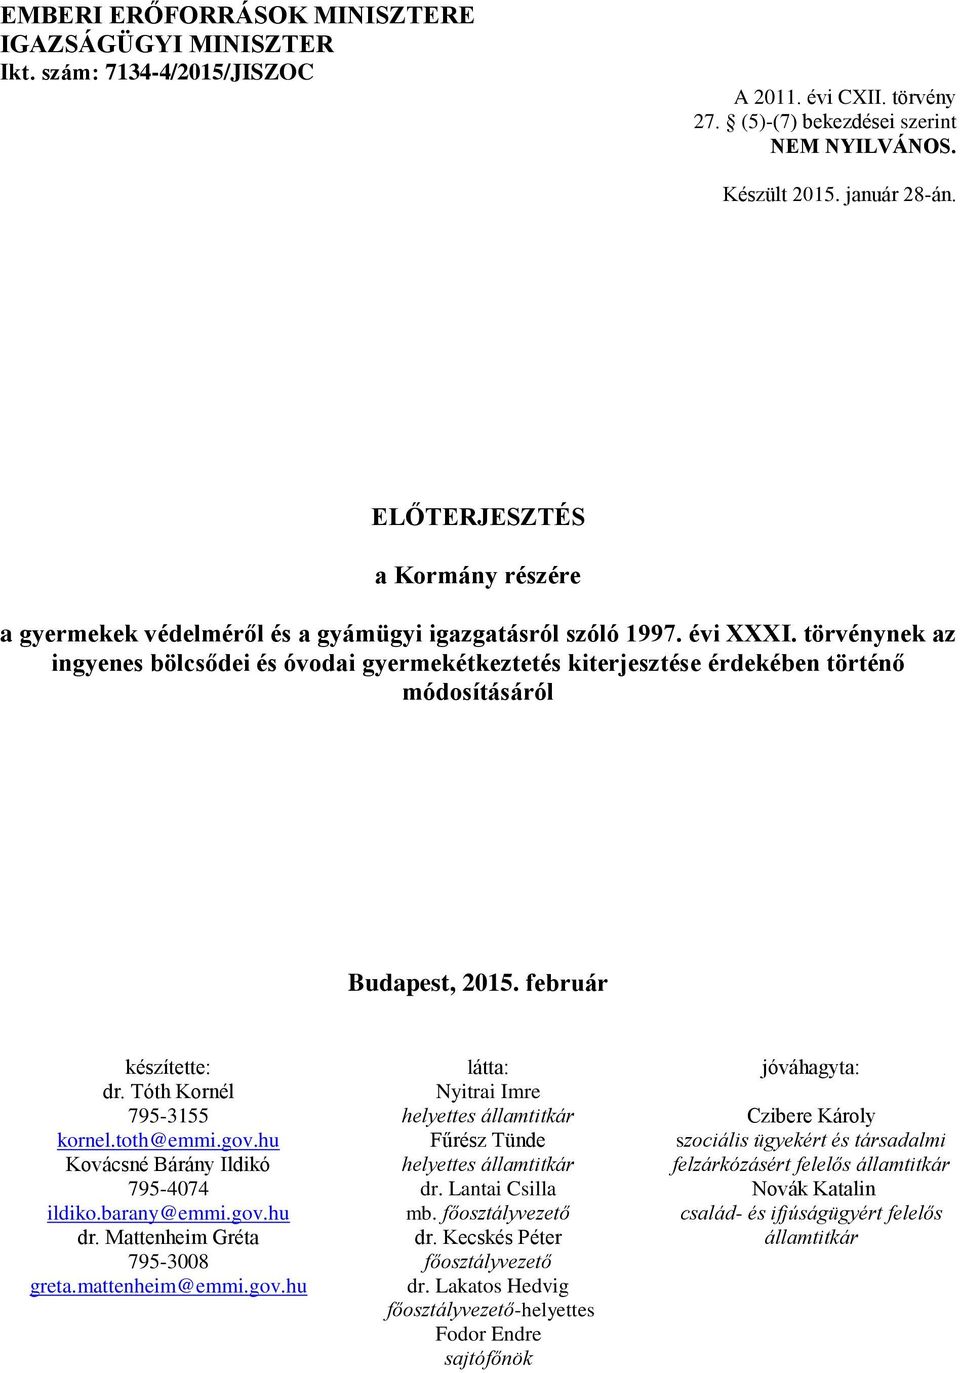 törvénynek az ingyenes bölcsődei és óvodai gyermekétkeztetés kiterjesztése érdekében történő módosításáról Budapest, 2015. február készítette: dr. Tóth Kornél 795-3155 kornel.toth@emmi.gov.